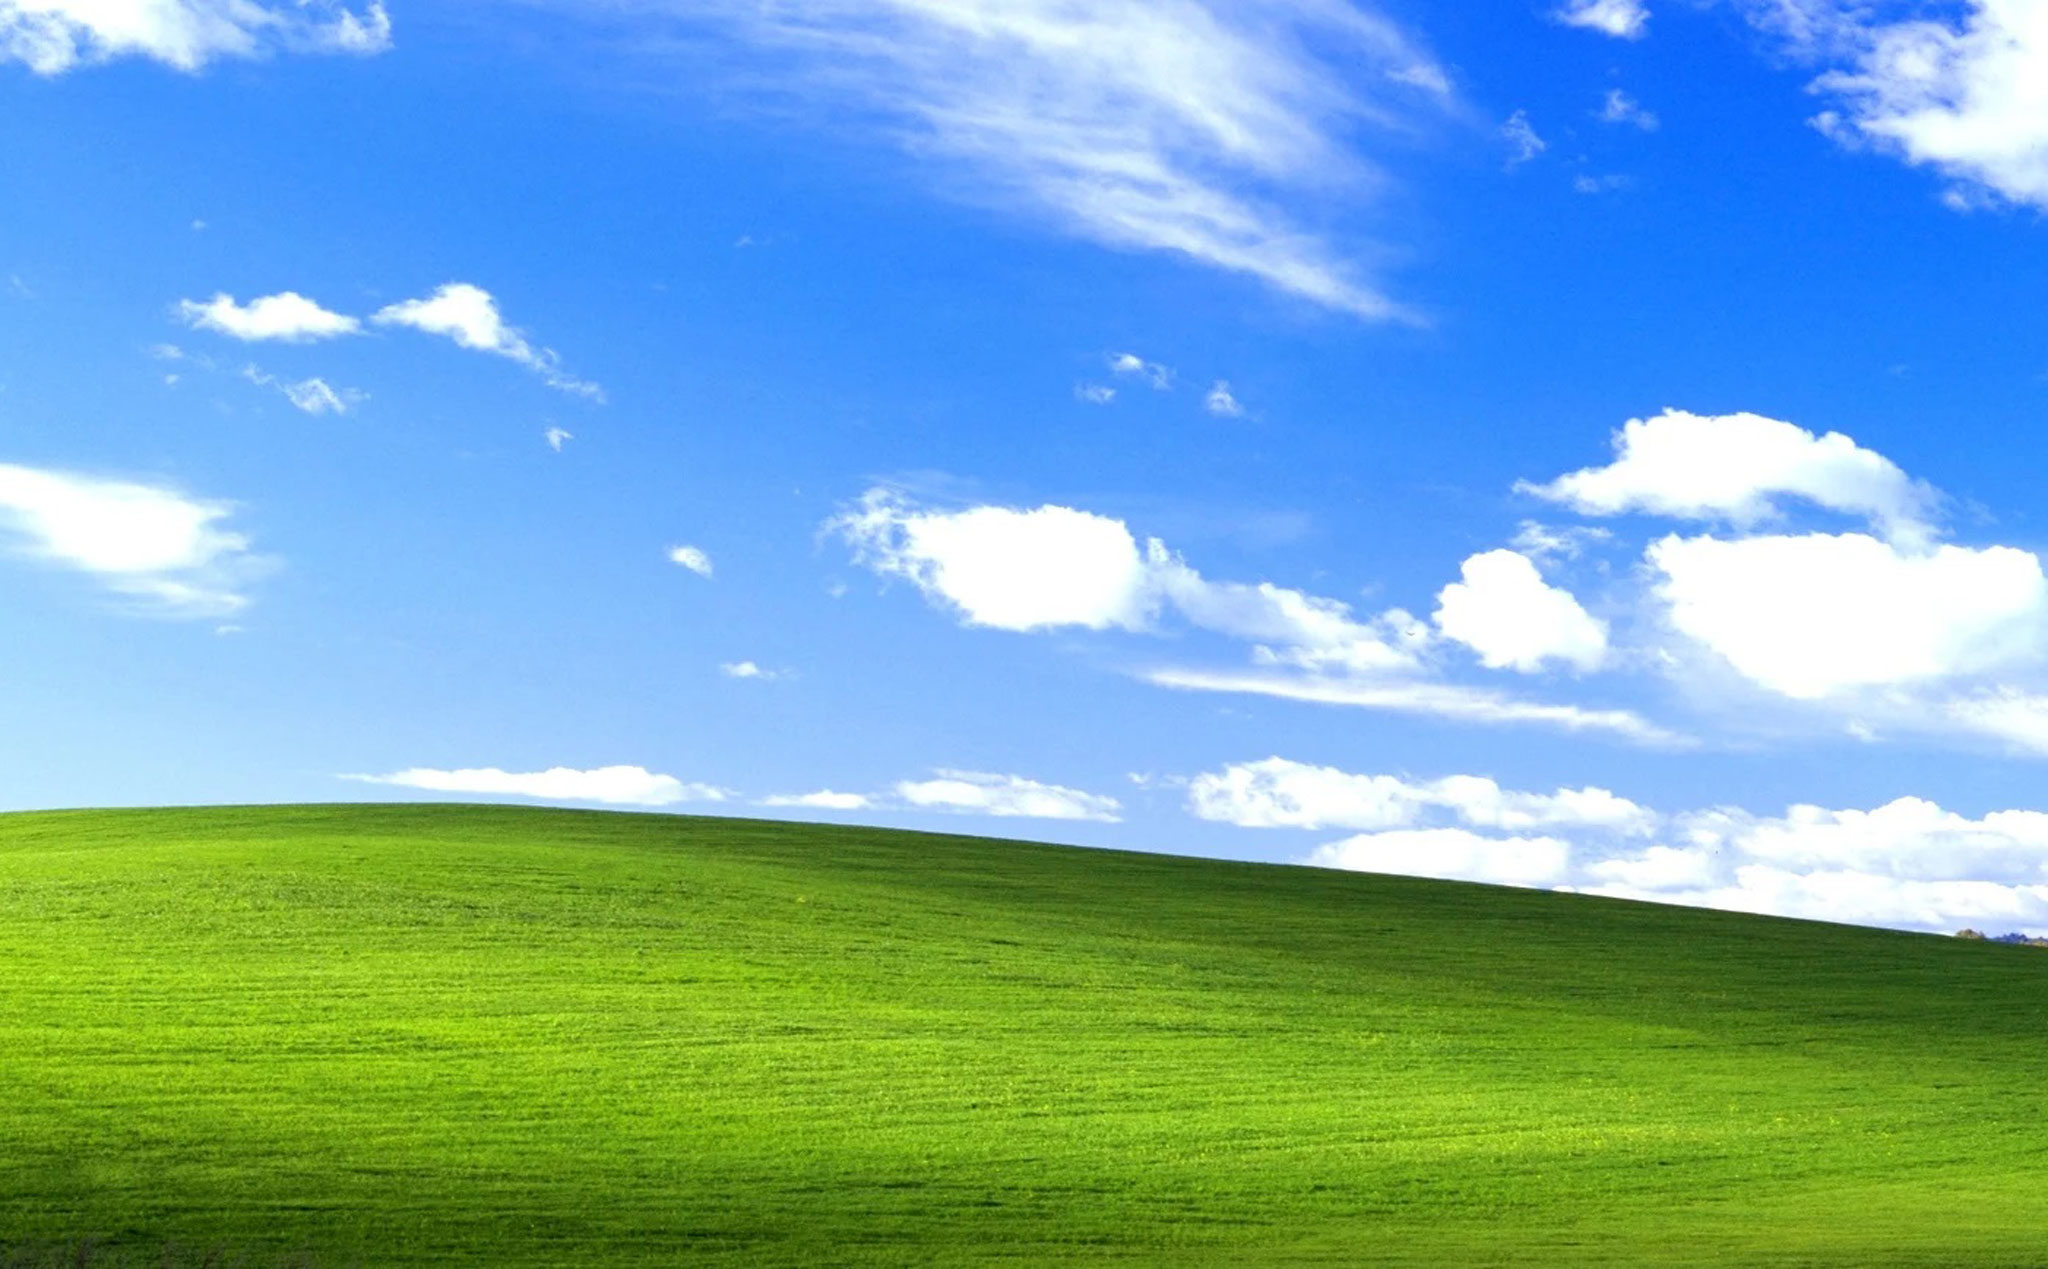 Để hiểu rõ hơn về cách mà nó đã thay đổi cuộc sống và công nghệ của chúng ta, hãy xem hình ảnh liên quan đến Windows XP.